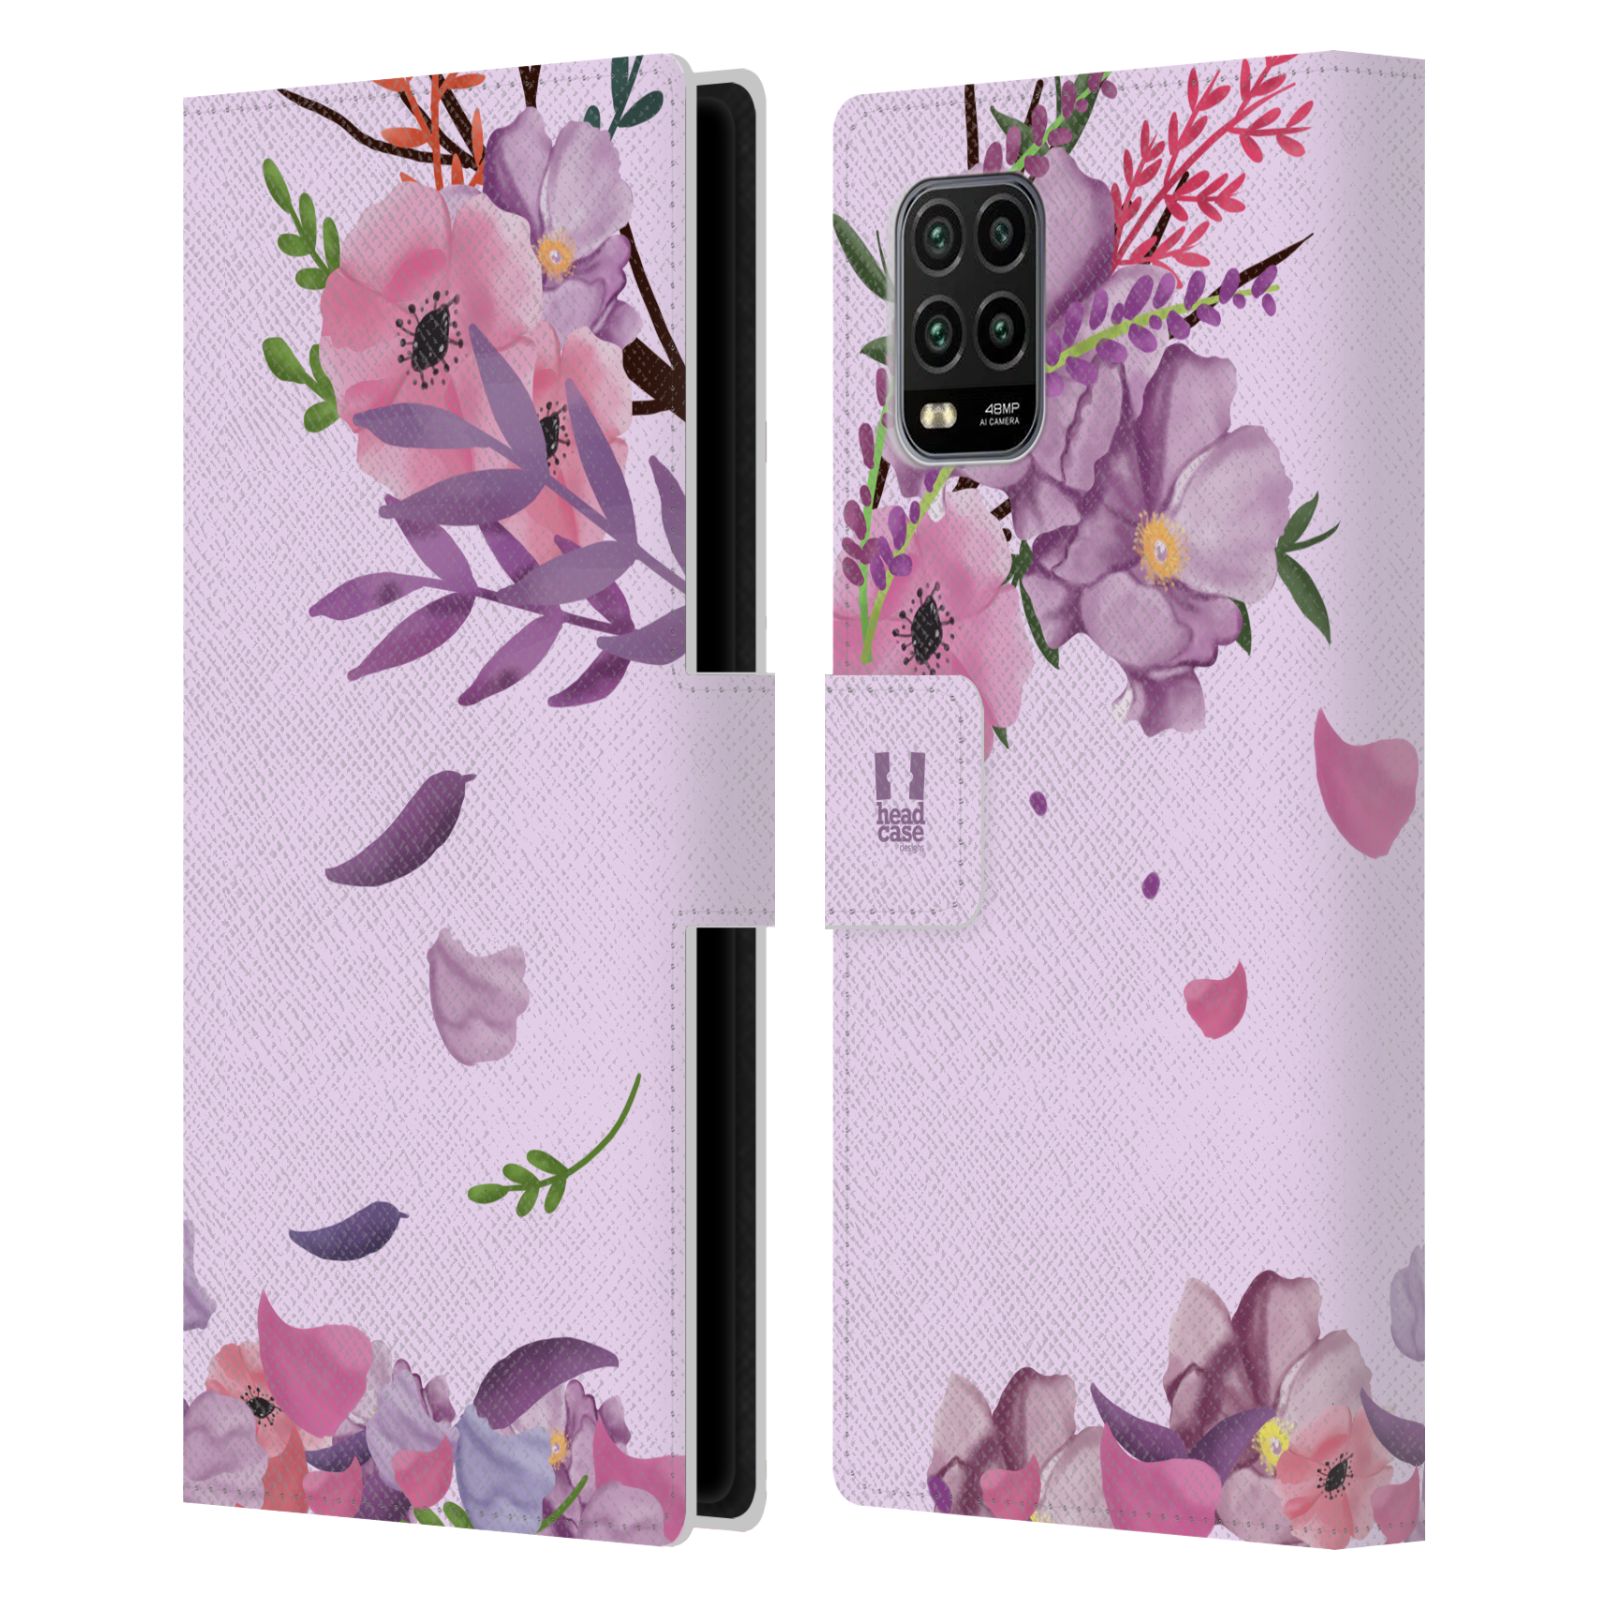 Pouzdro na mobil Xiaomi Mi 10 LITE  - HEAD CASE - Rozkvetlé růže a listy růžová